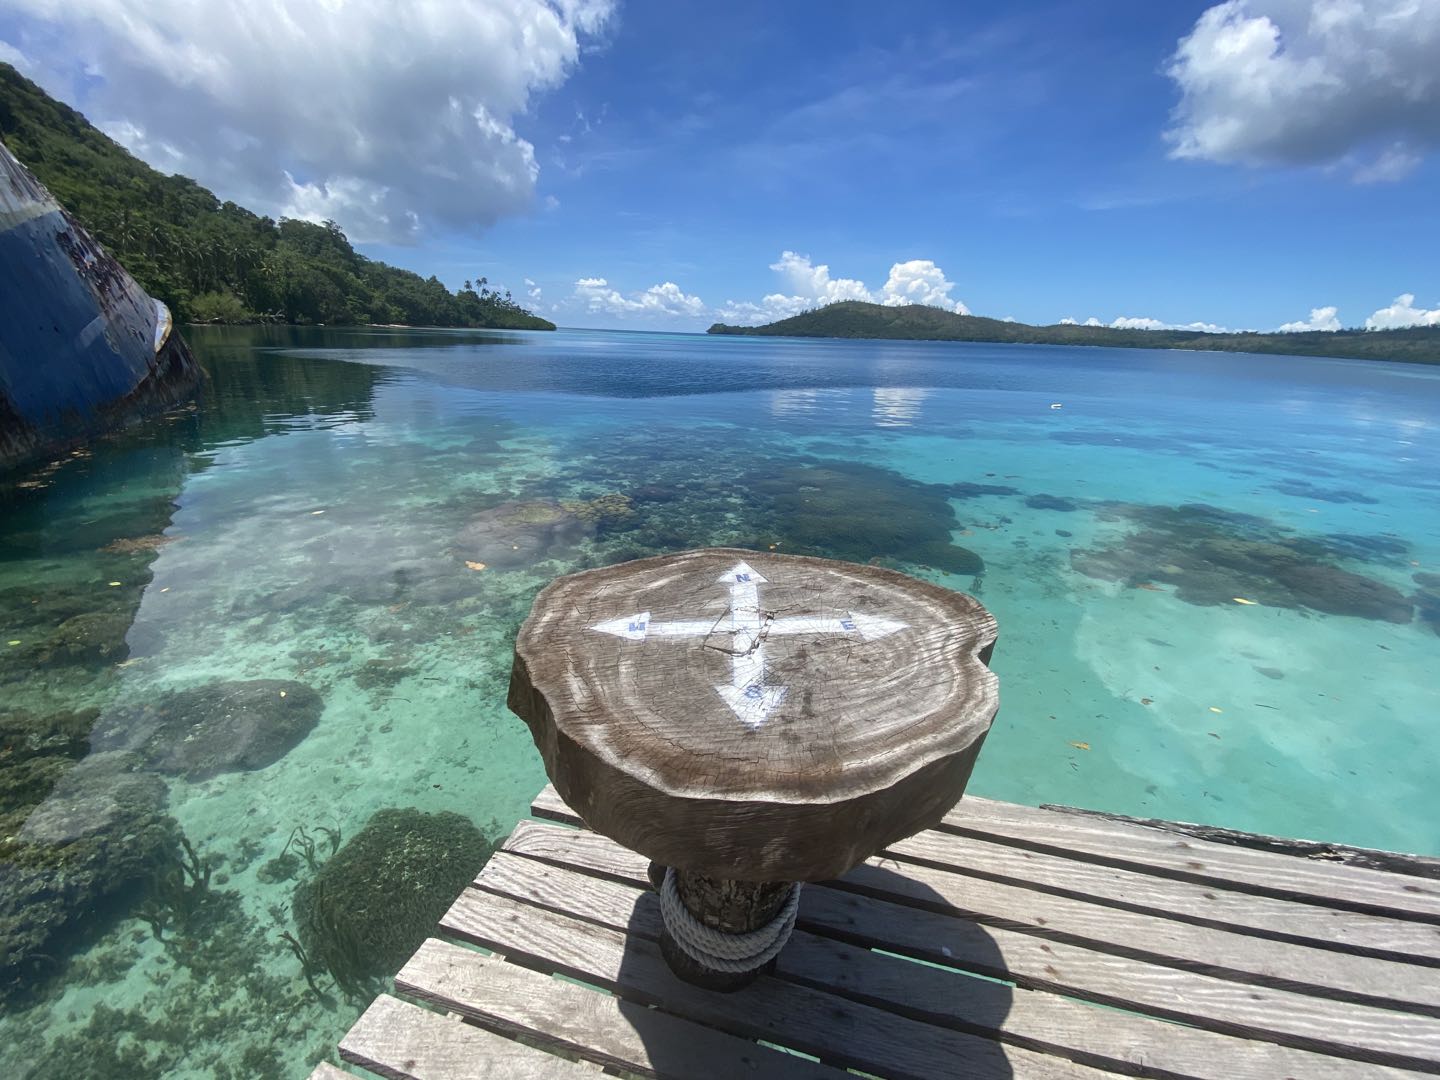 solomon islands travel requirements